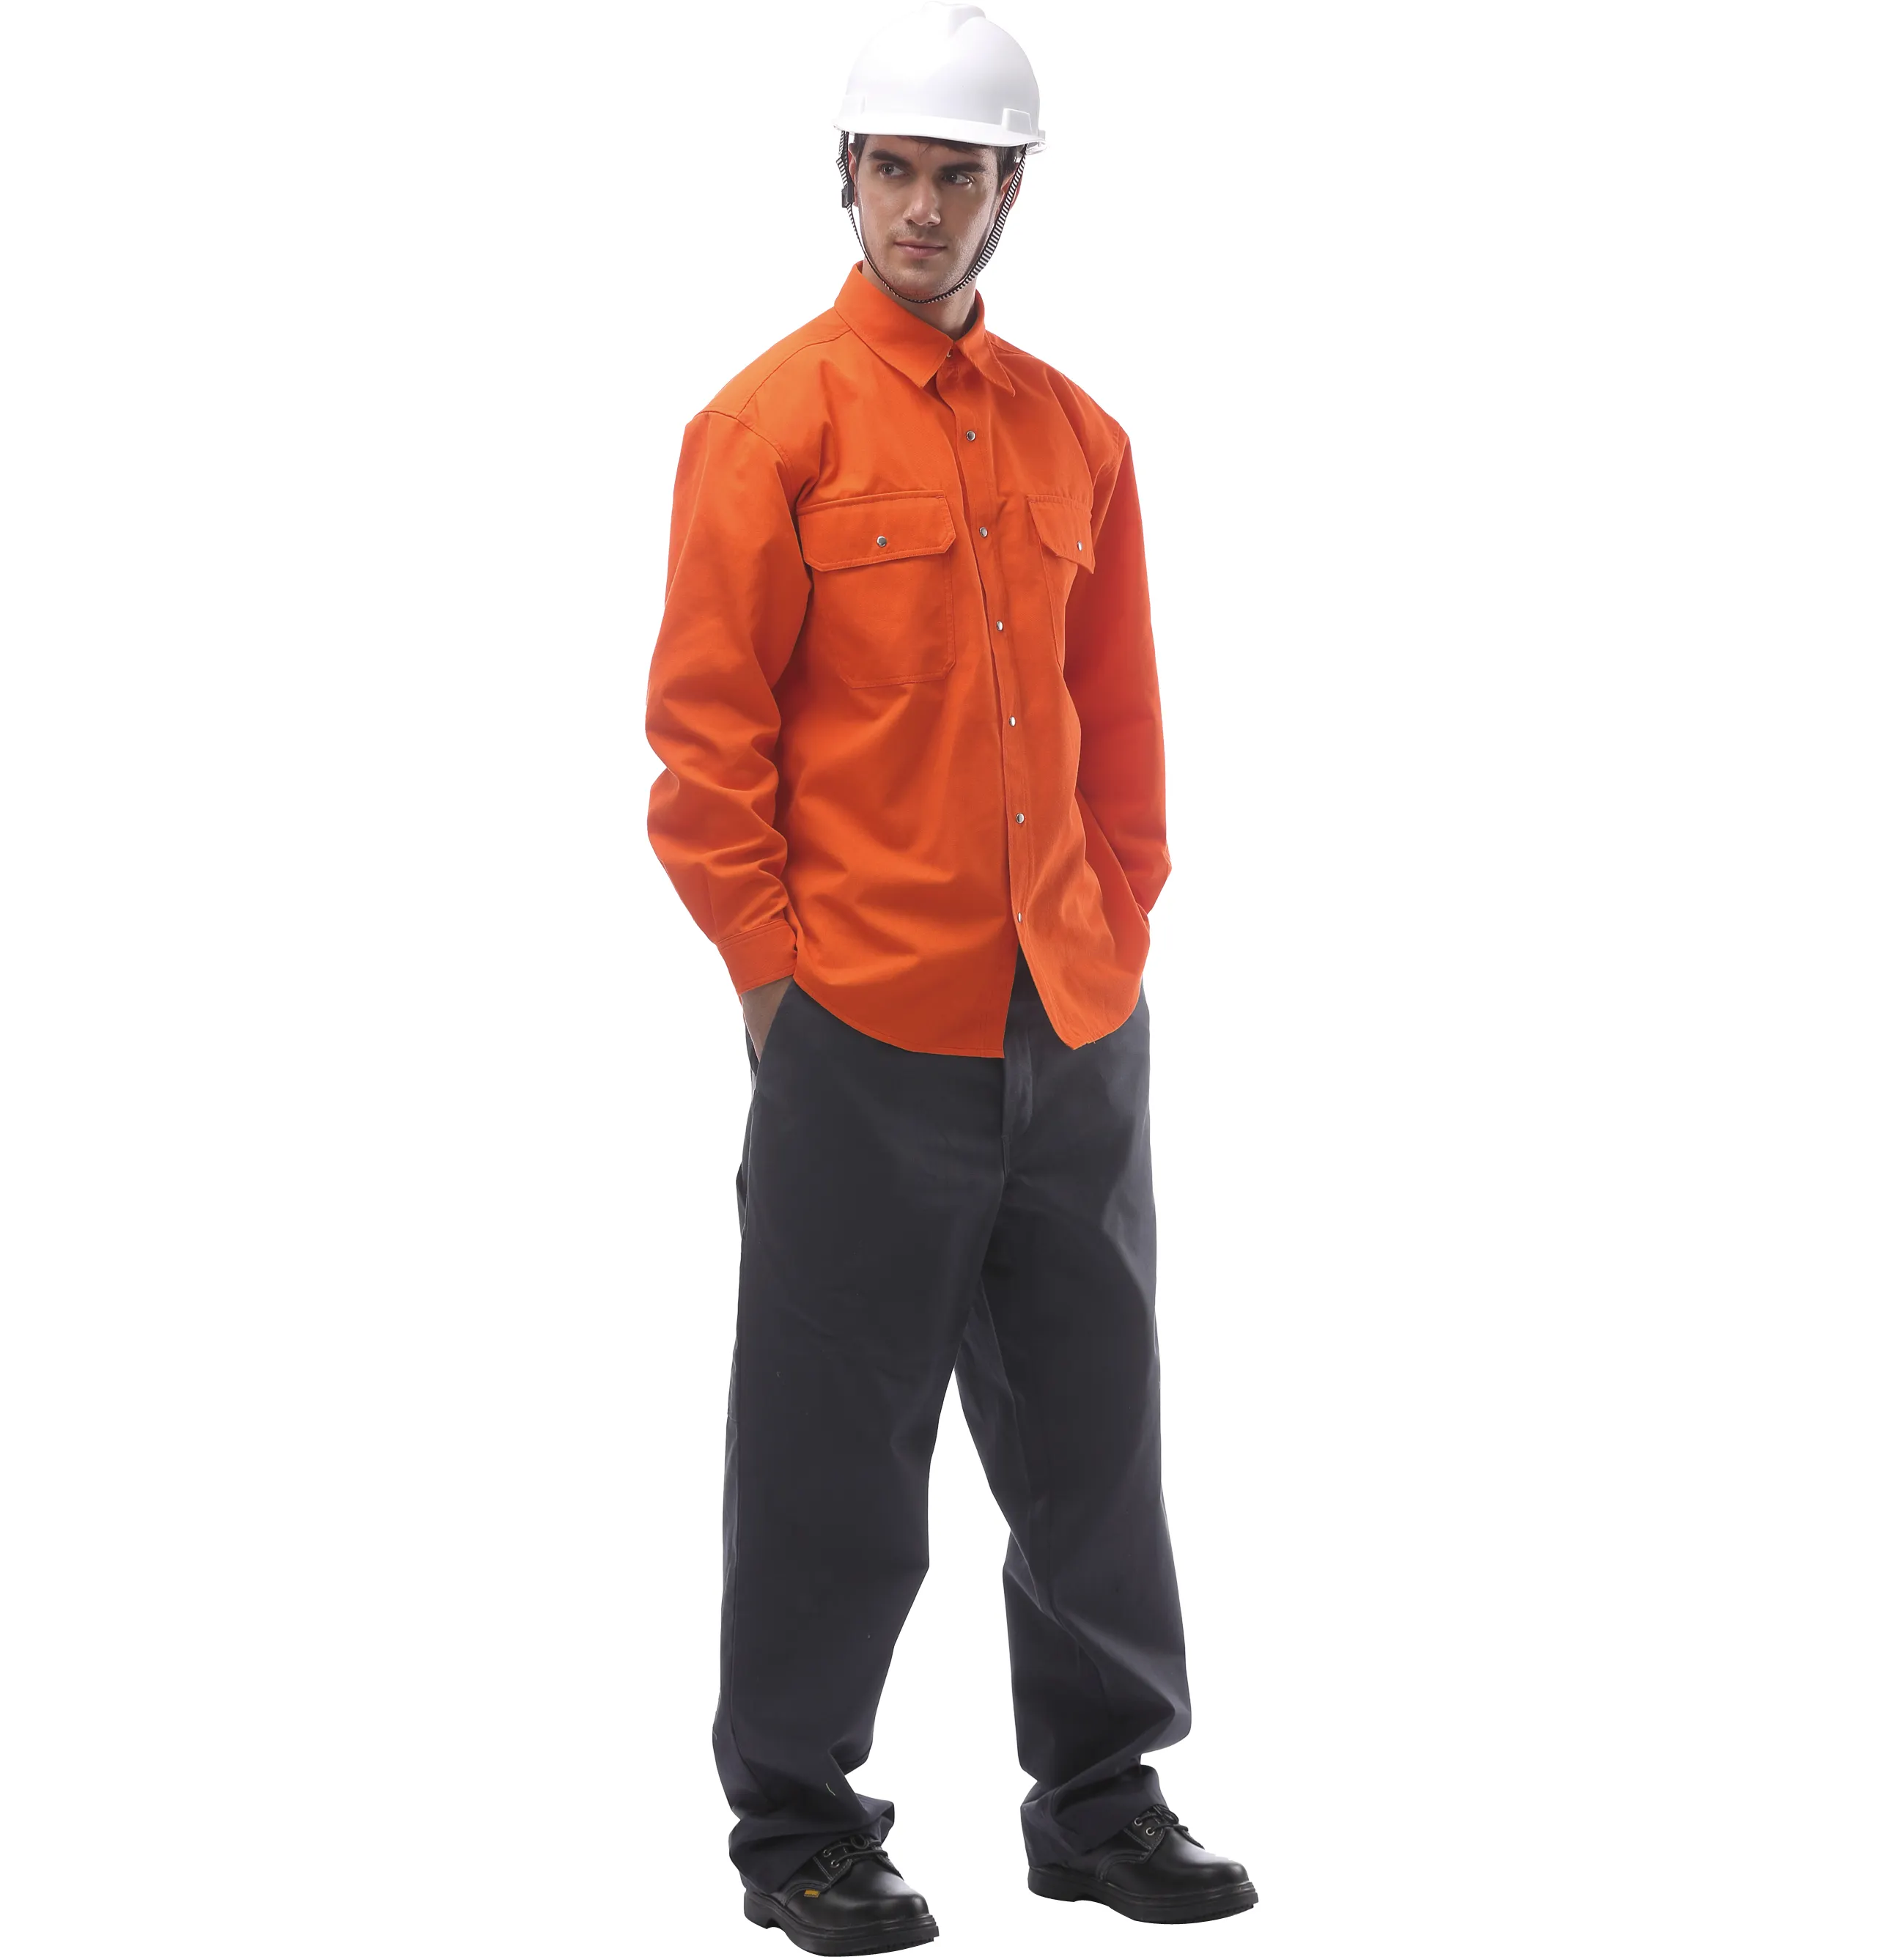 The Fine Quality Camisas jaqueta de manga longa industrial macacão de trabalho roupas de trabalho